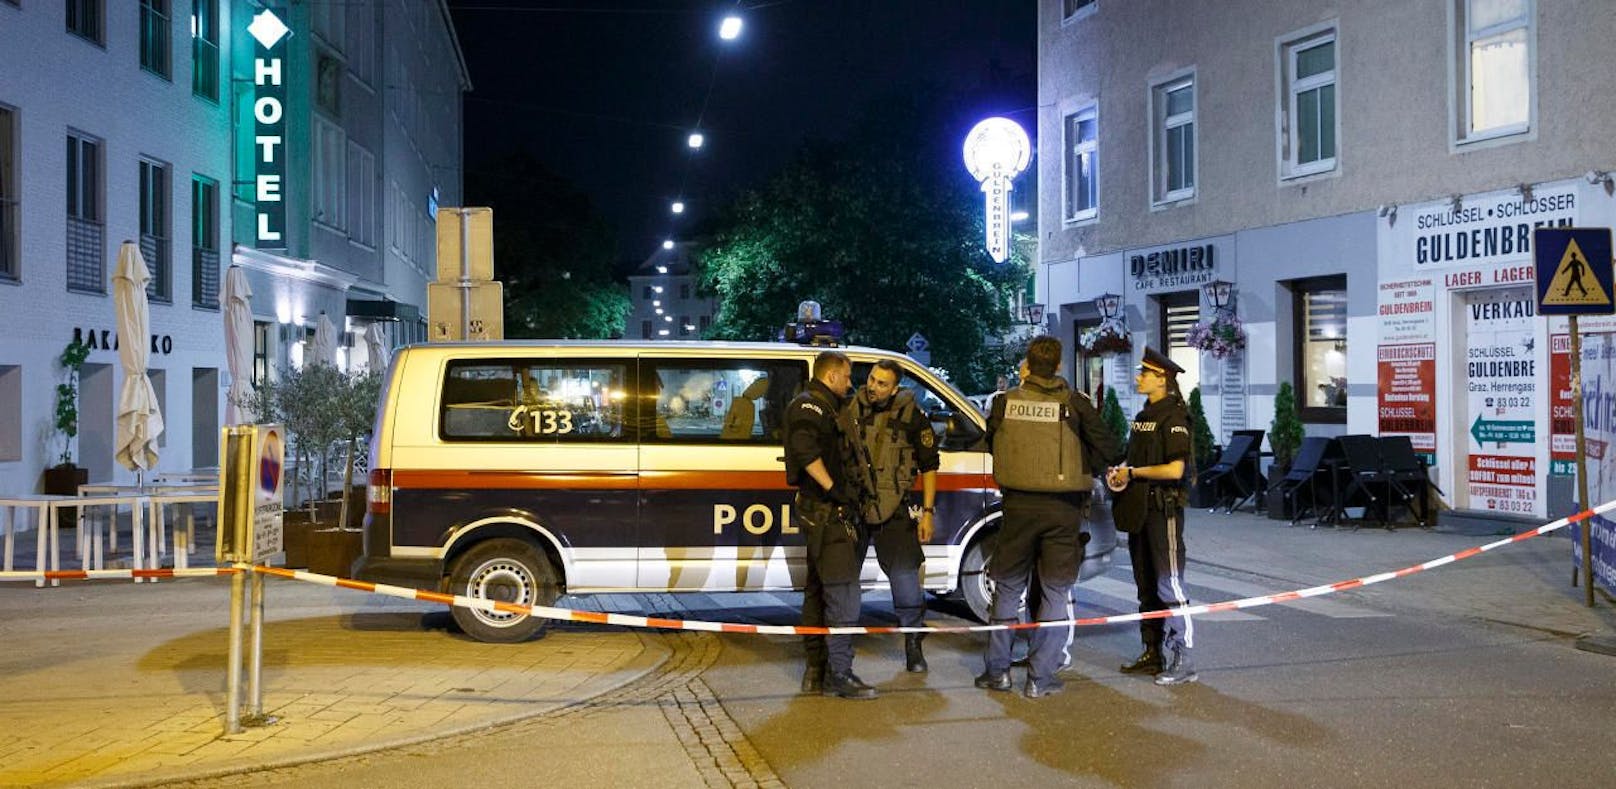 In der Nacht auf Donnerstag kam es zu einem nächtlichen Polizeieinsatz in Ludesch.